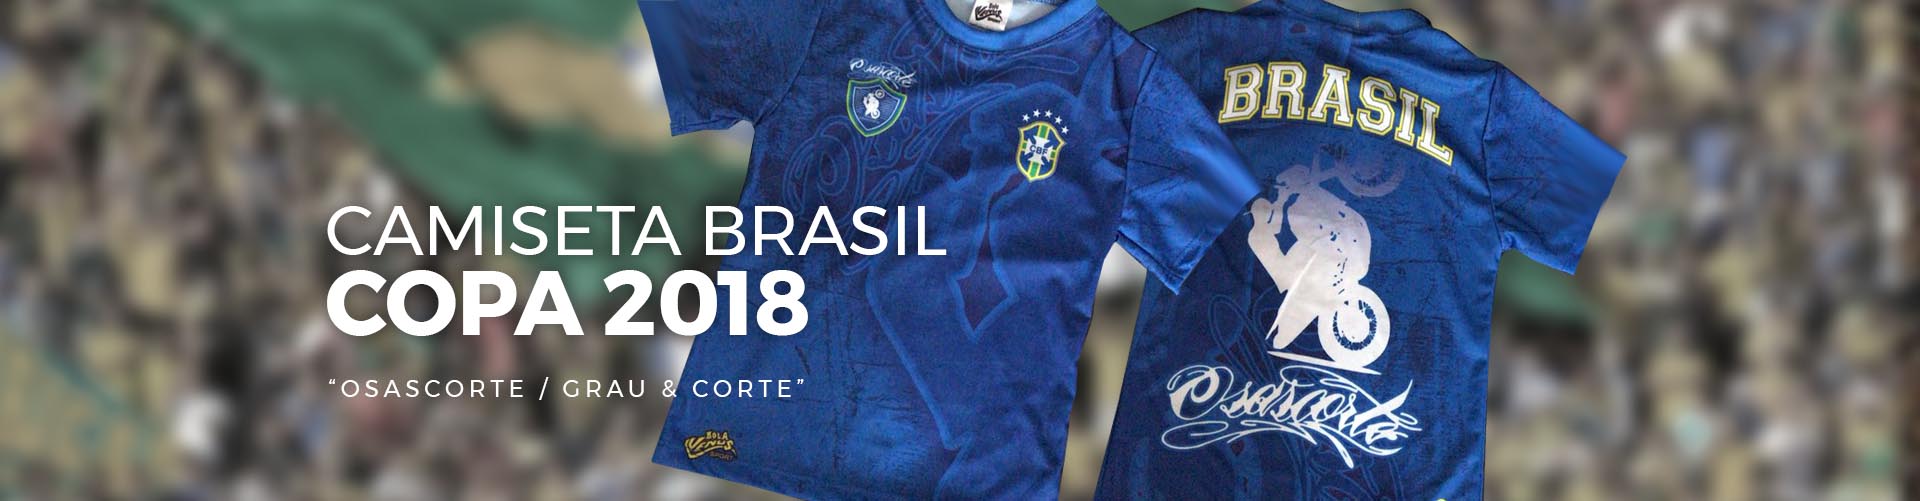 Camiseta Copa 2018